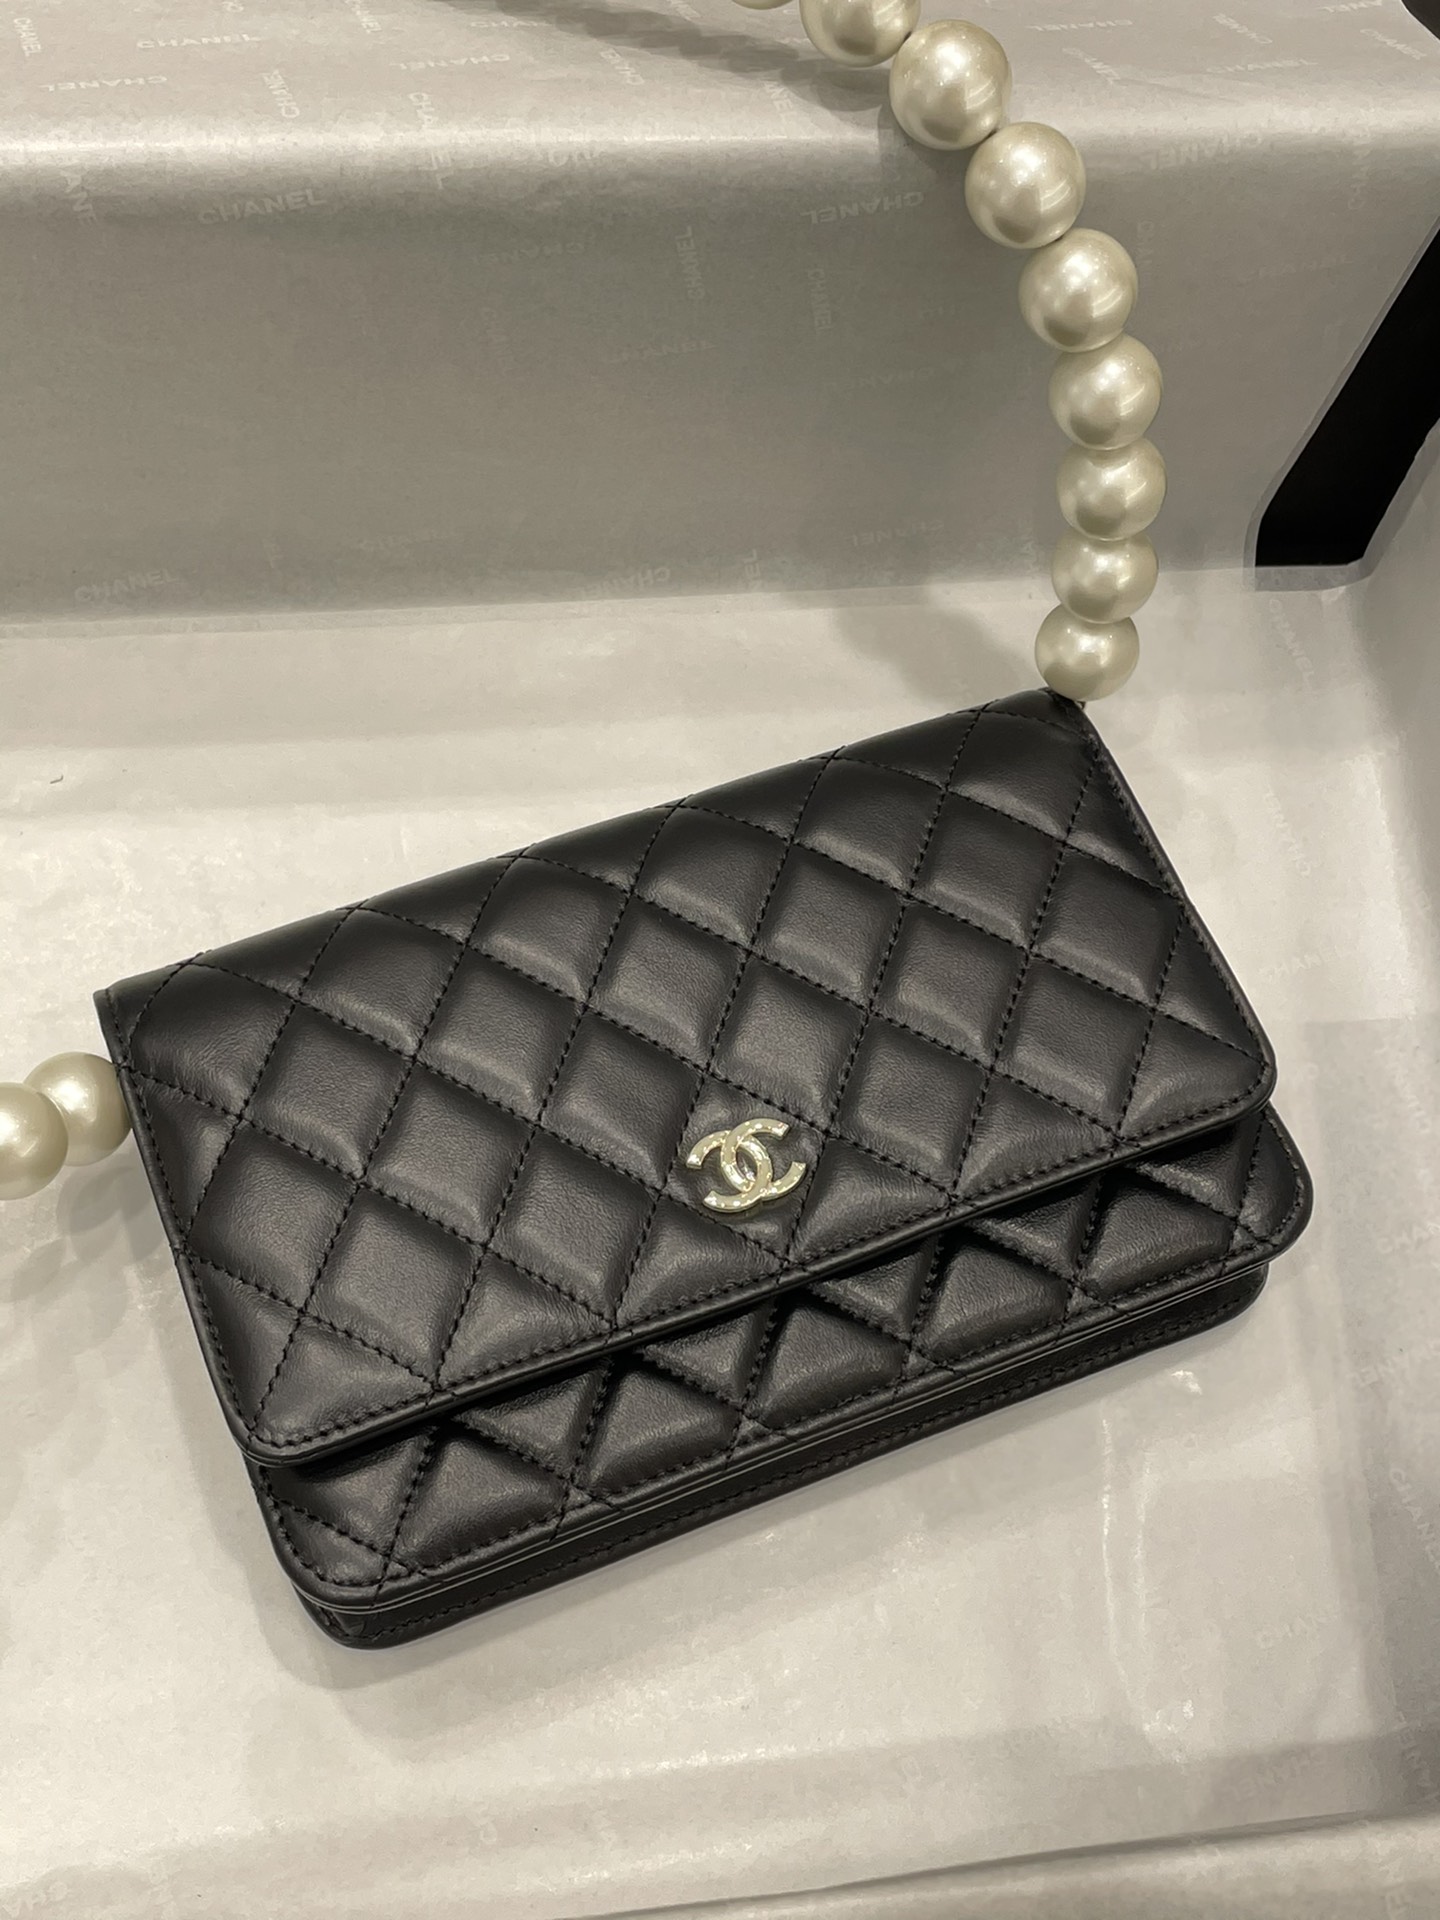 Chanel woc 珍珠发财包 小菱格珍珠链条包 大颗珍珠做成肩带 菱格纹 19cm